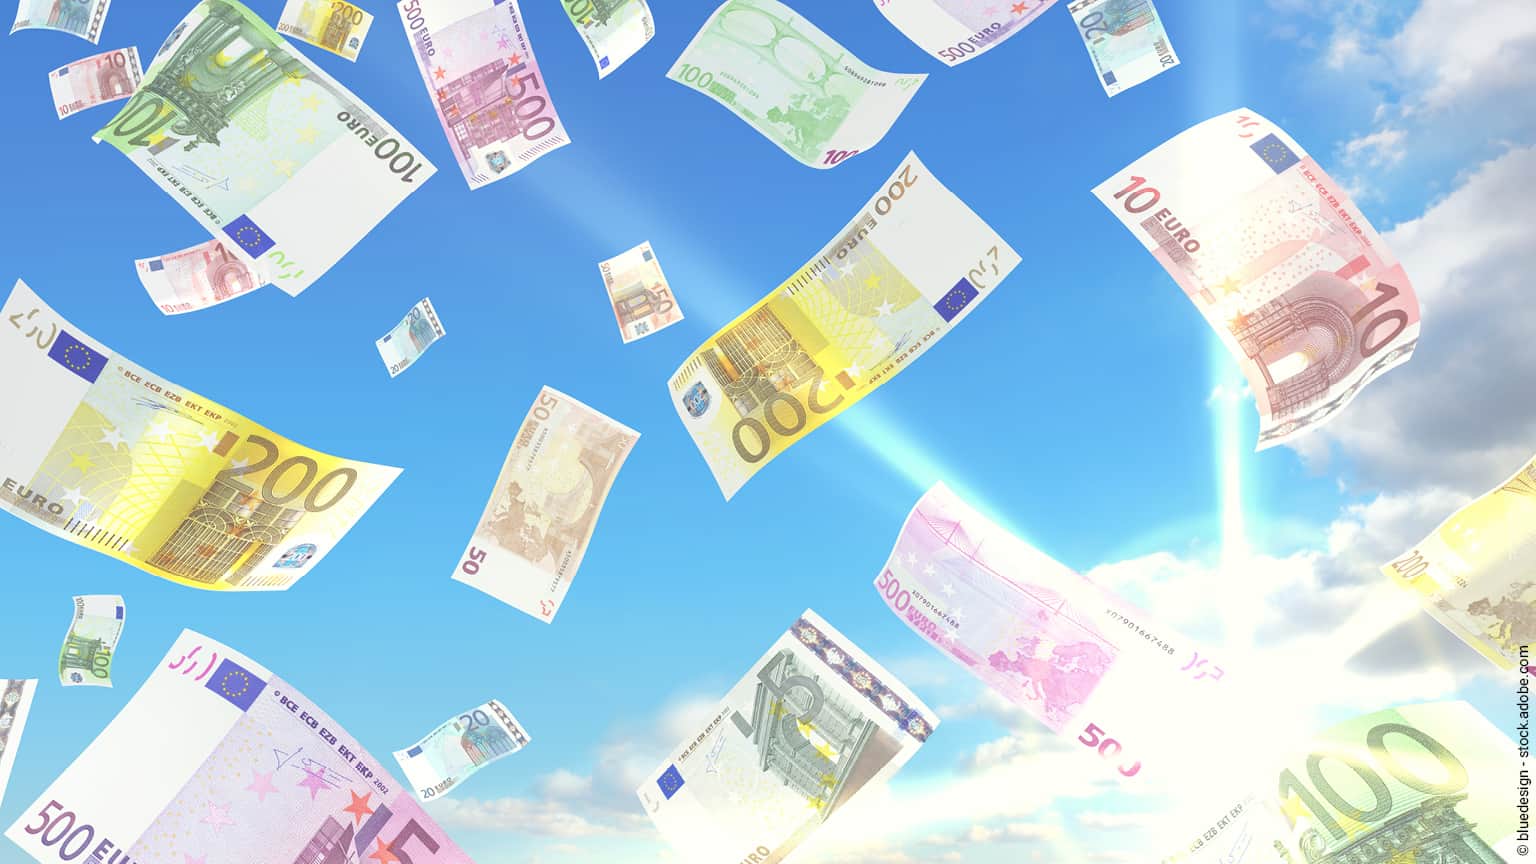 Bild mit Geldscheinen, die von Himmel fallen, zeigen, was die Steuerreform für Österreich bringen soll.